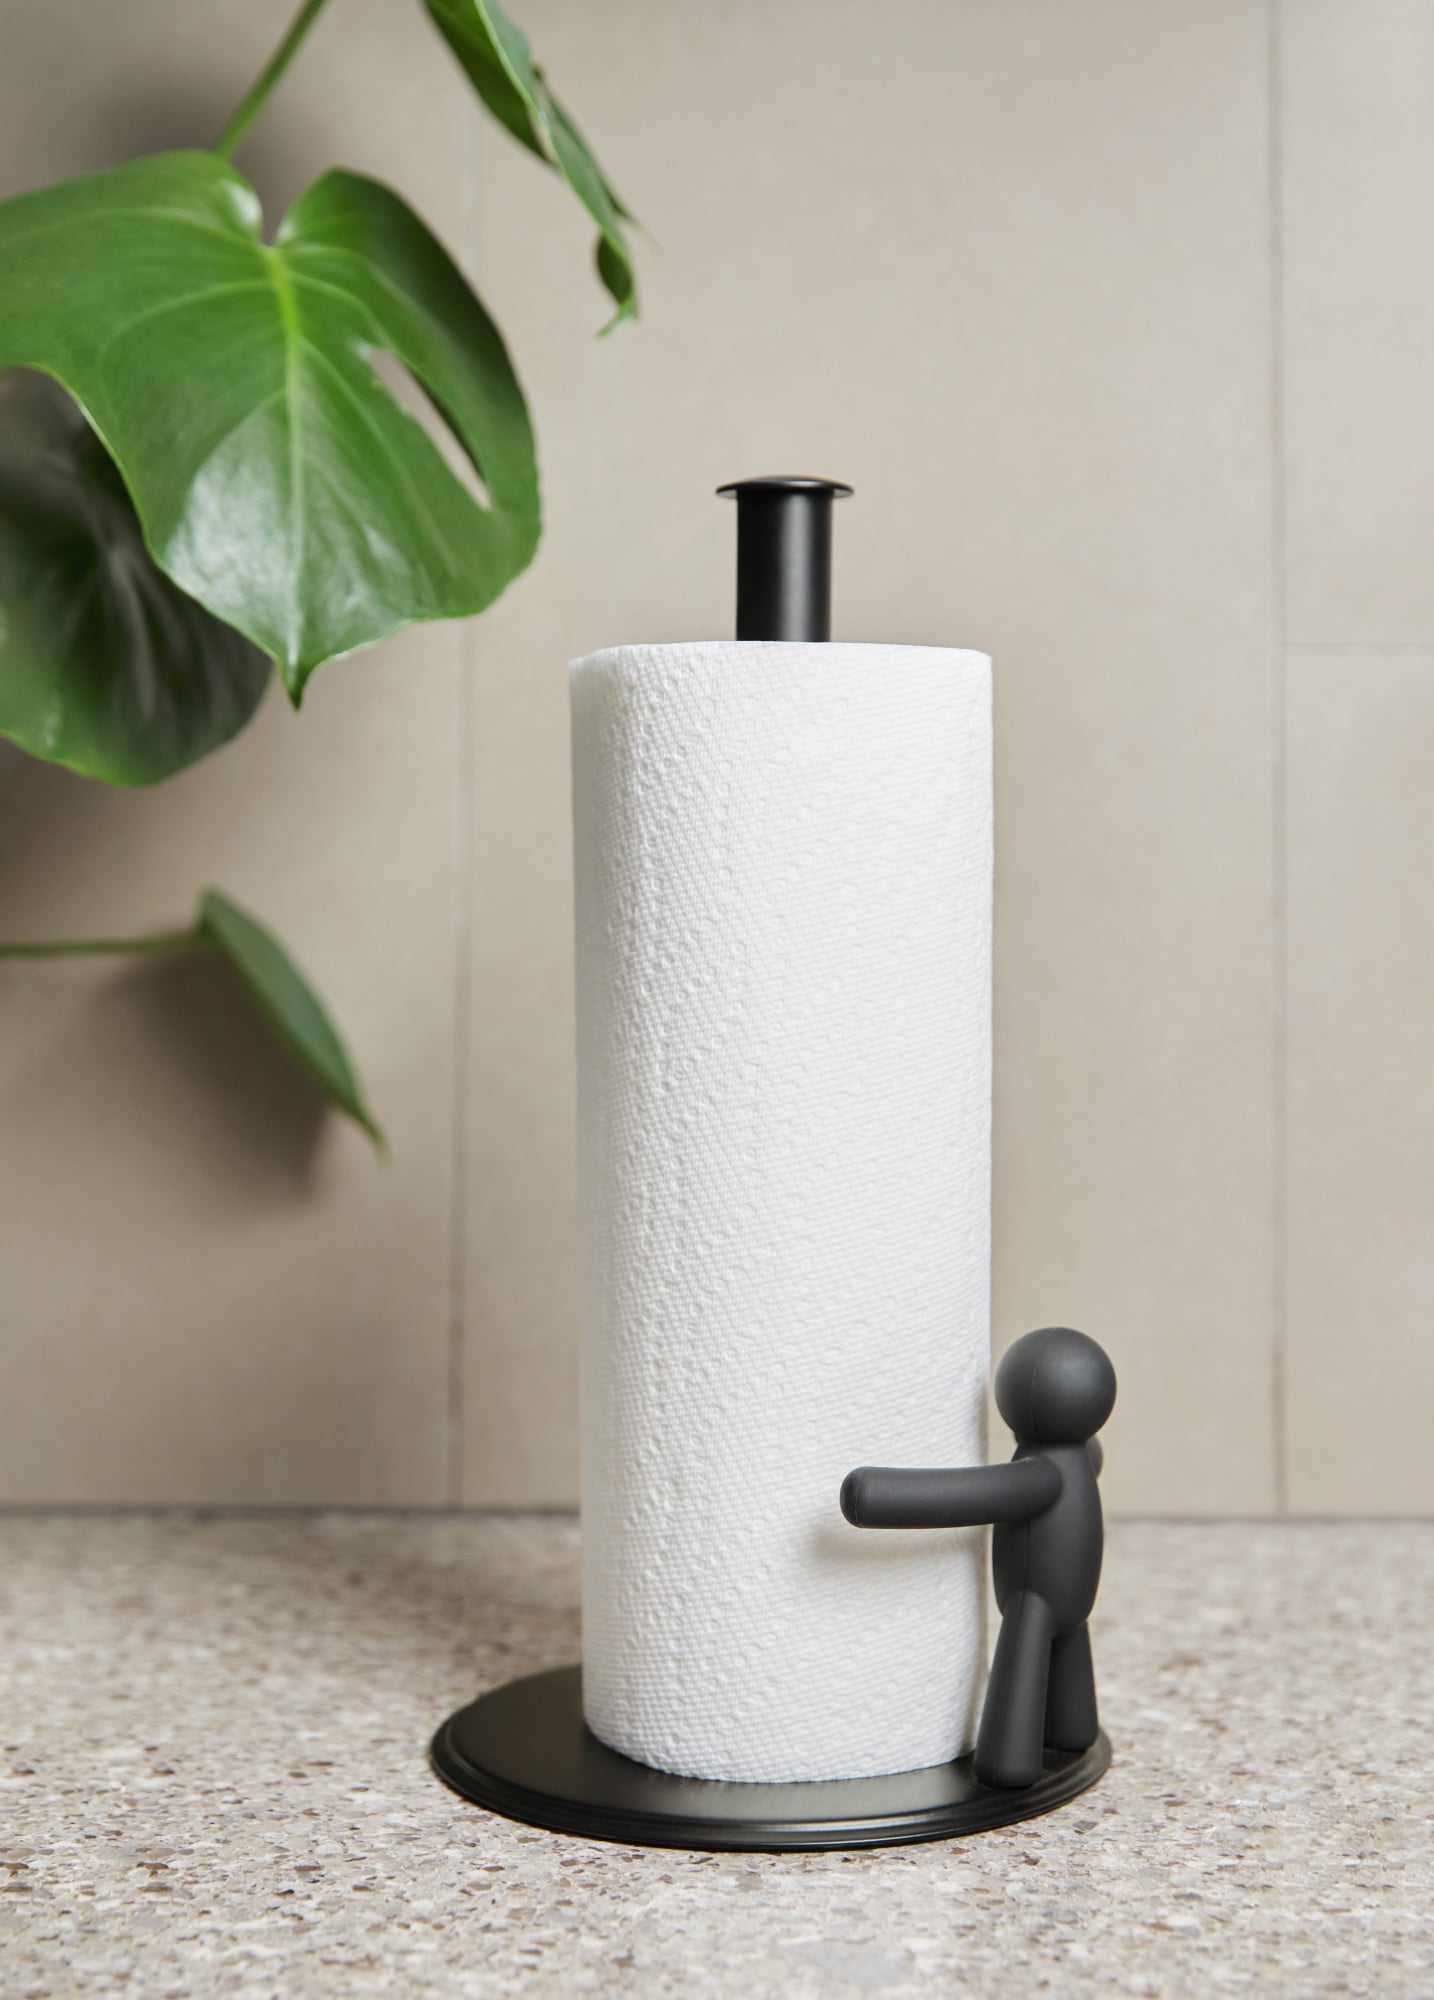 Umbra Buddy Paper Towel Holder, White